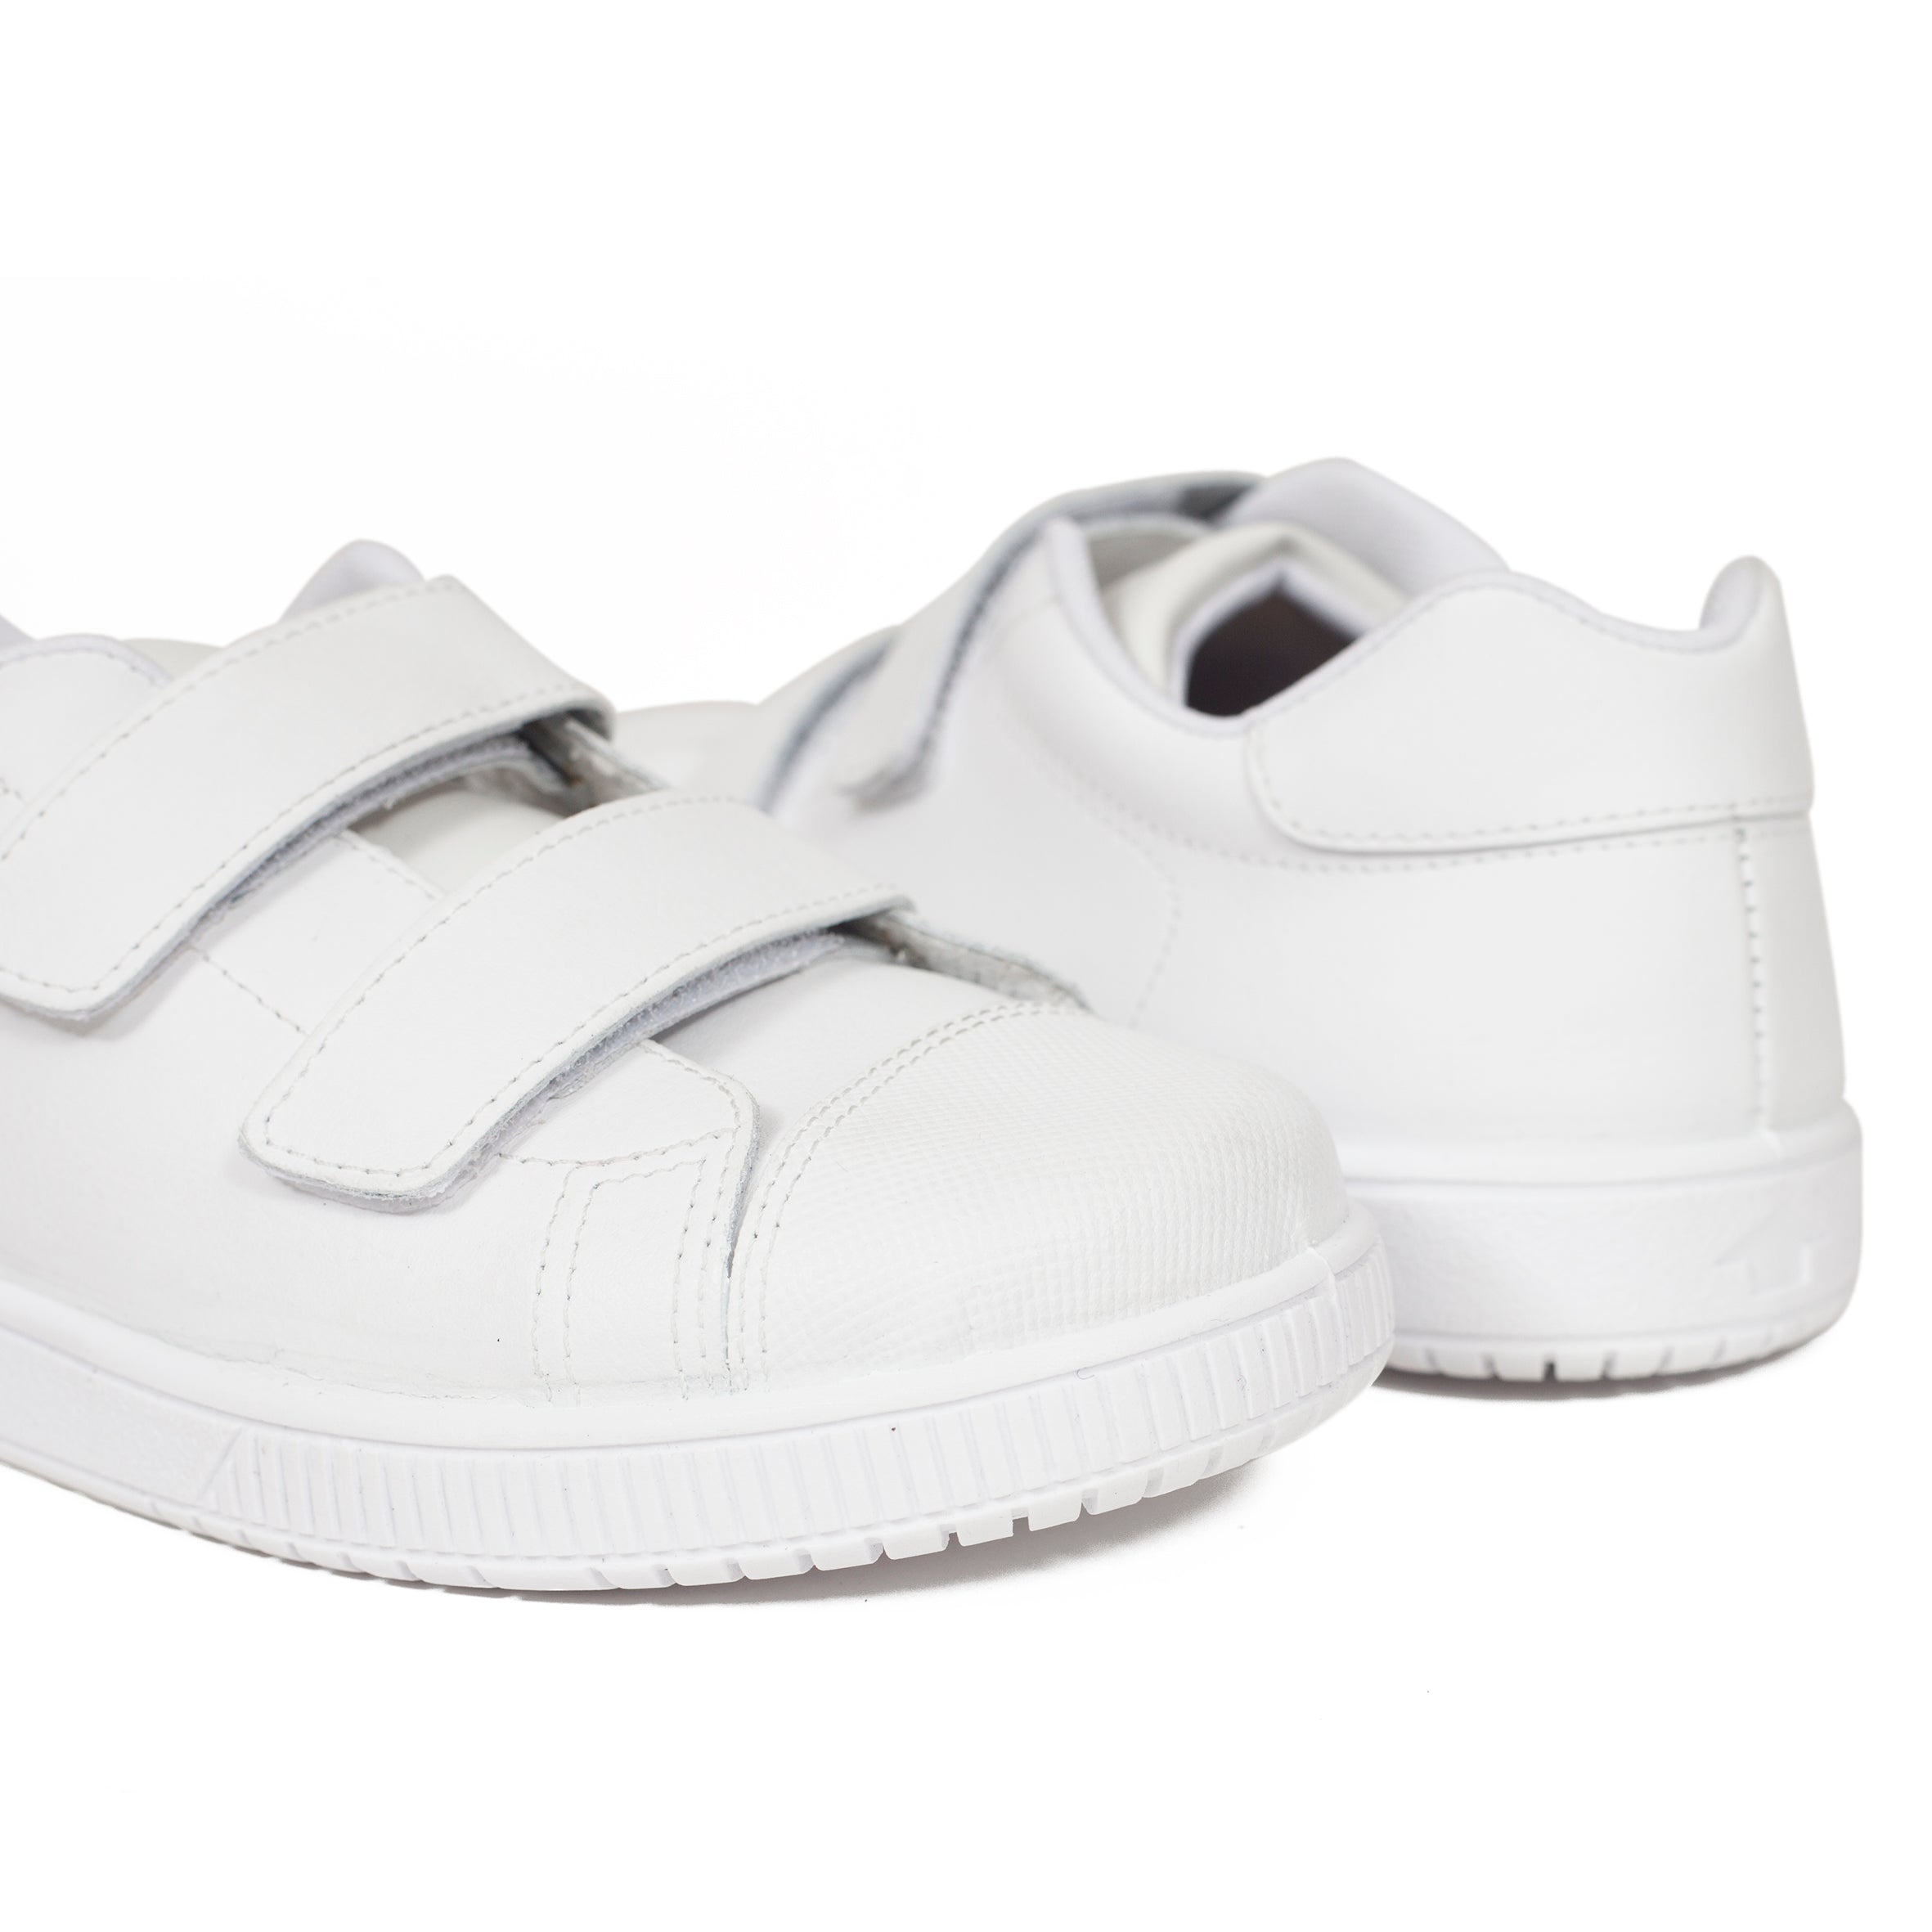 Zapatos niño online colegiales de marca miMaO